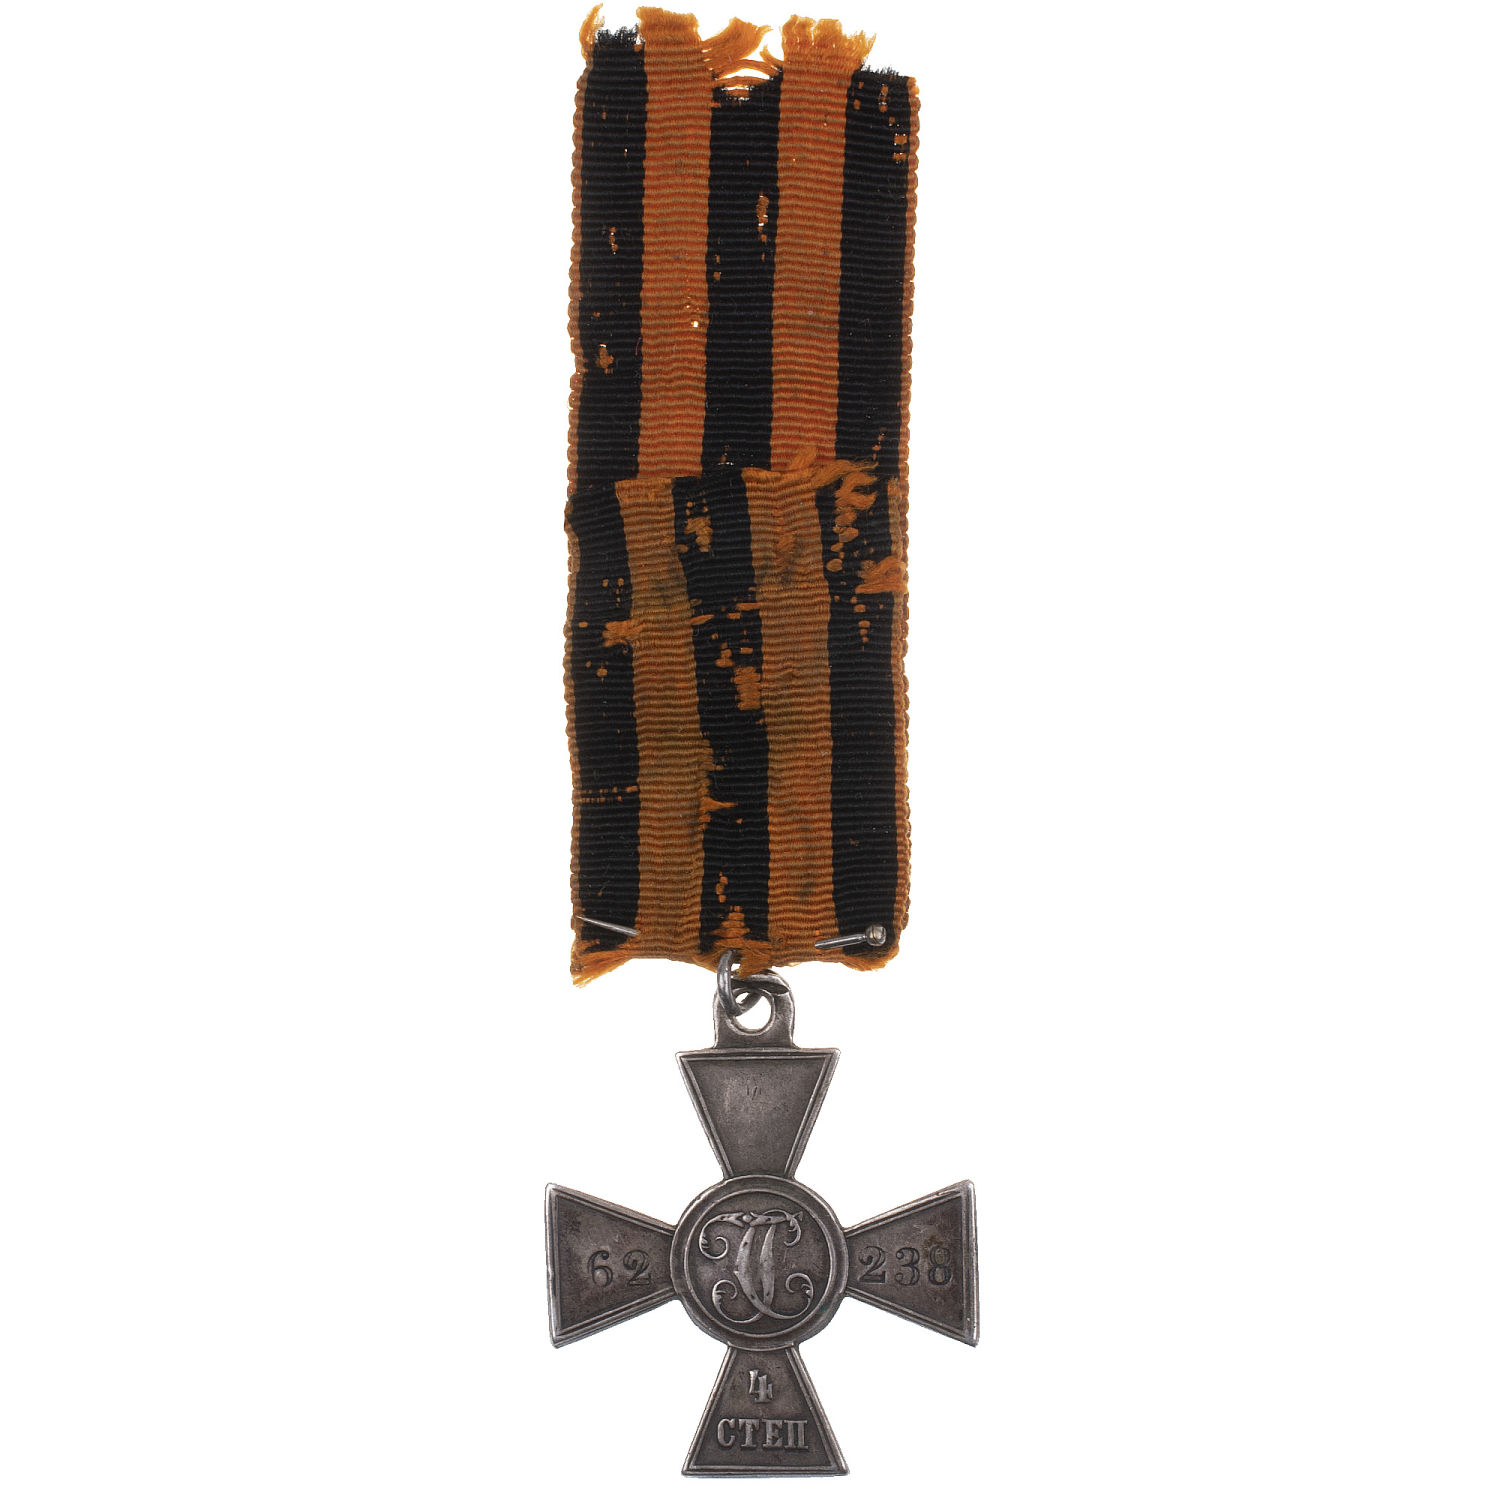 Знак Отличия Военного Ордена 4 ст 62.238 (83 - й пехотный Самурский полк) на Георгиевской ленте. За взятие аула Цудахар.